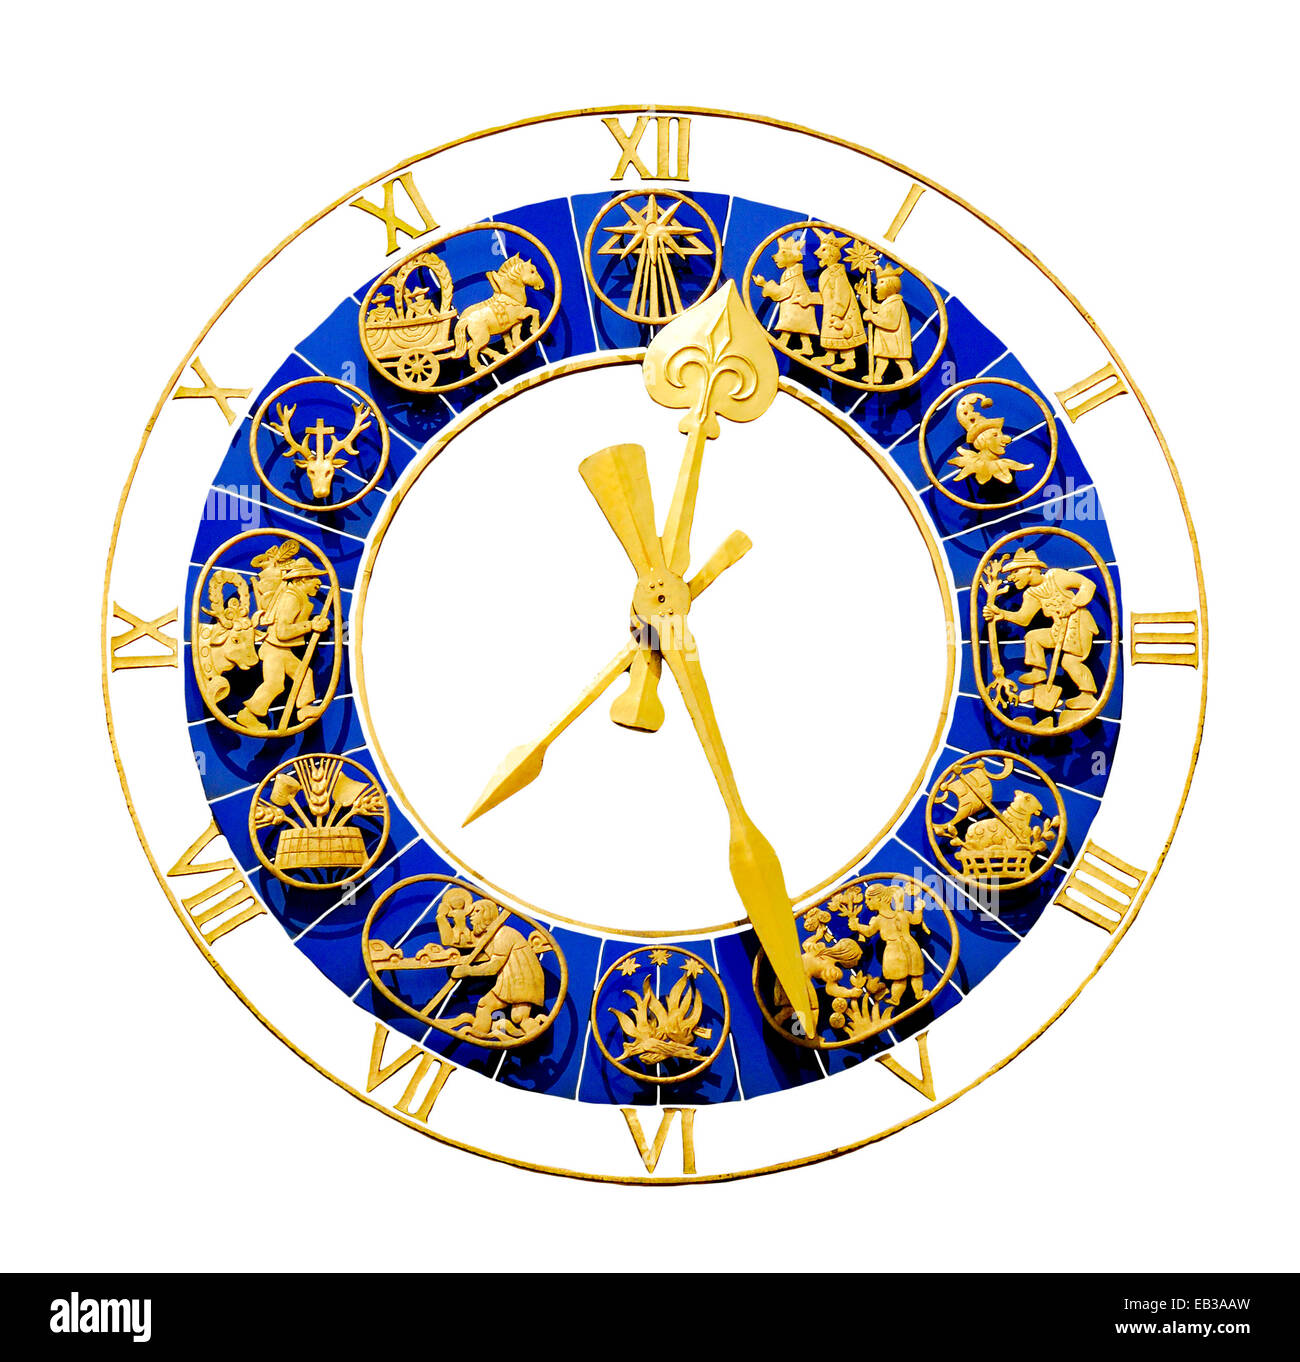 Munich, Bavière, Allemagne. Horloge décorative sur la tour de l'Altes Rathaus / Old Town Hall, la Marienplatz. Découpe numérique Banque D'Images